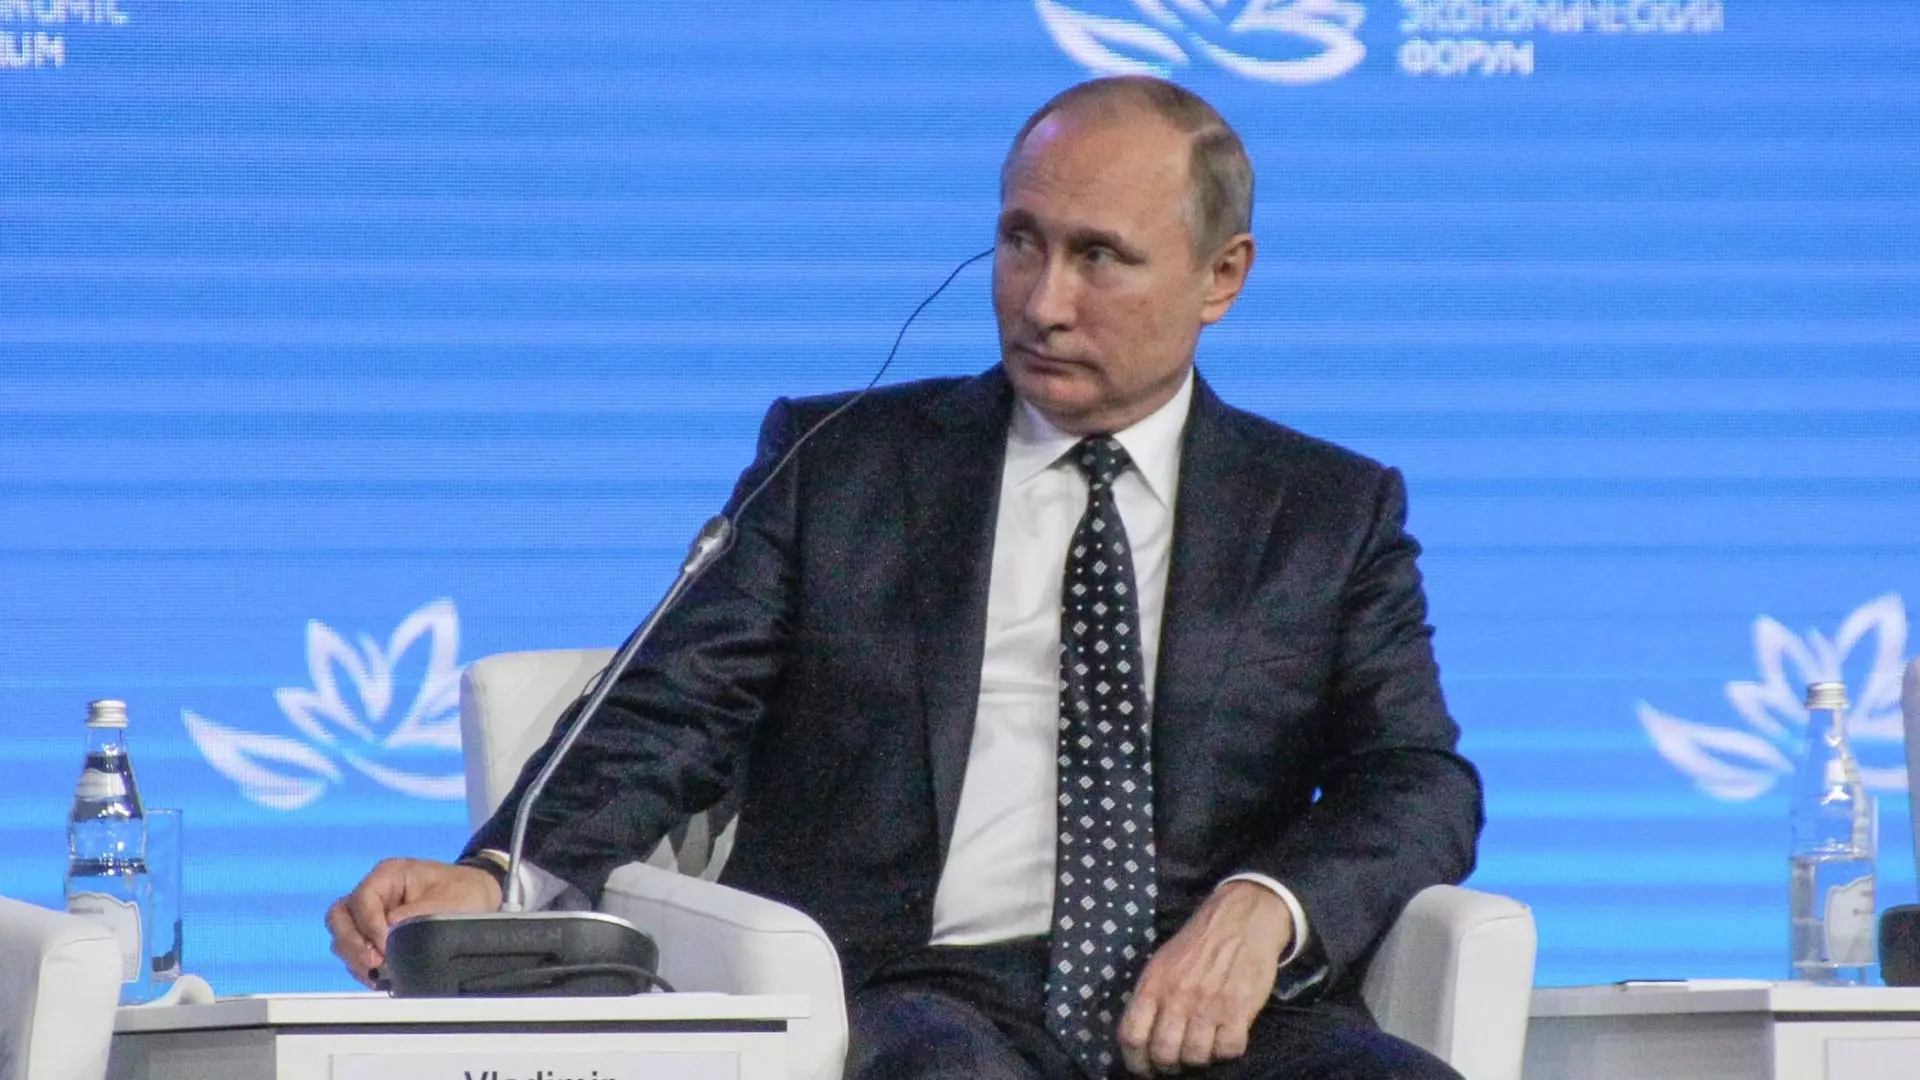 Видеозапись: Путин встал на колено перед больными детьми